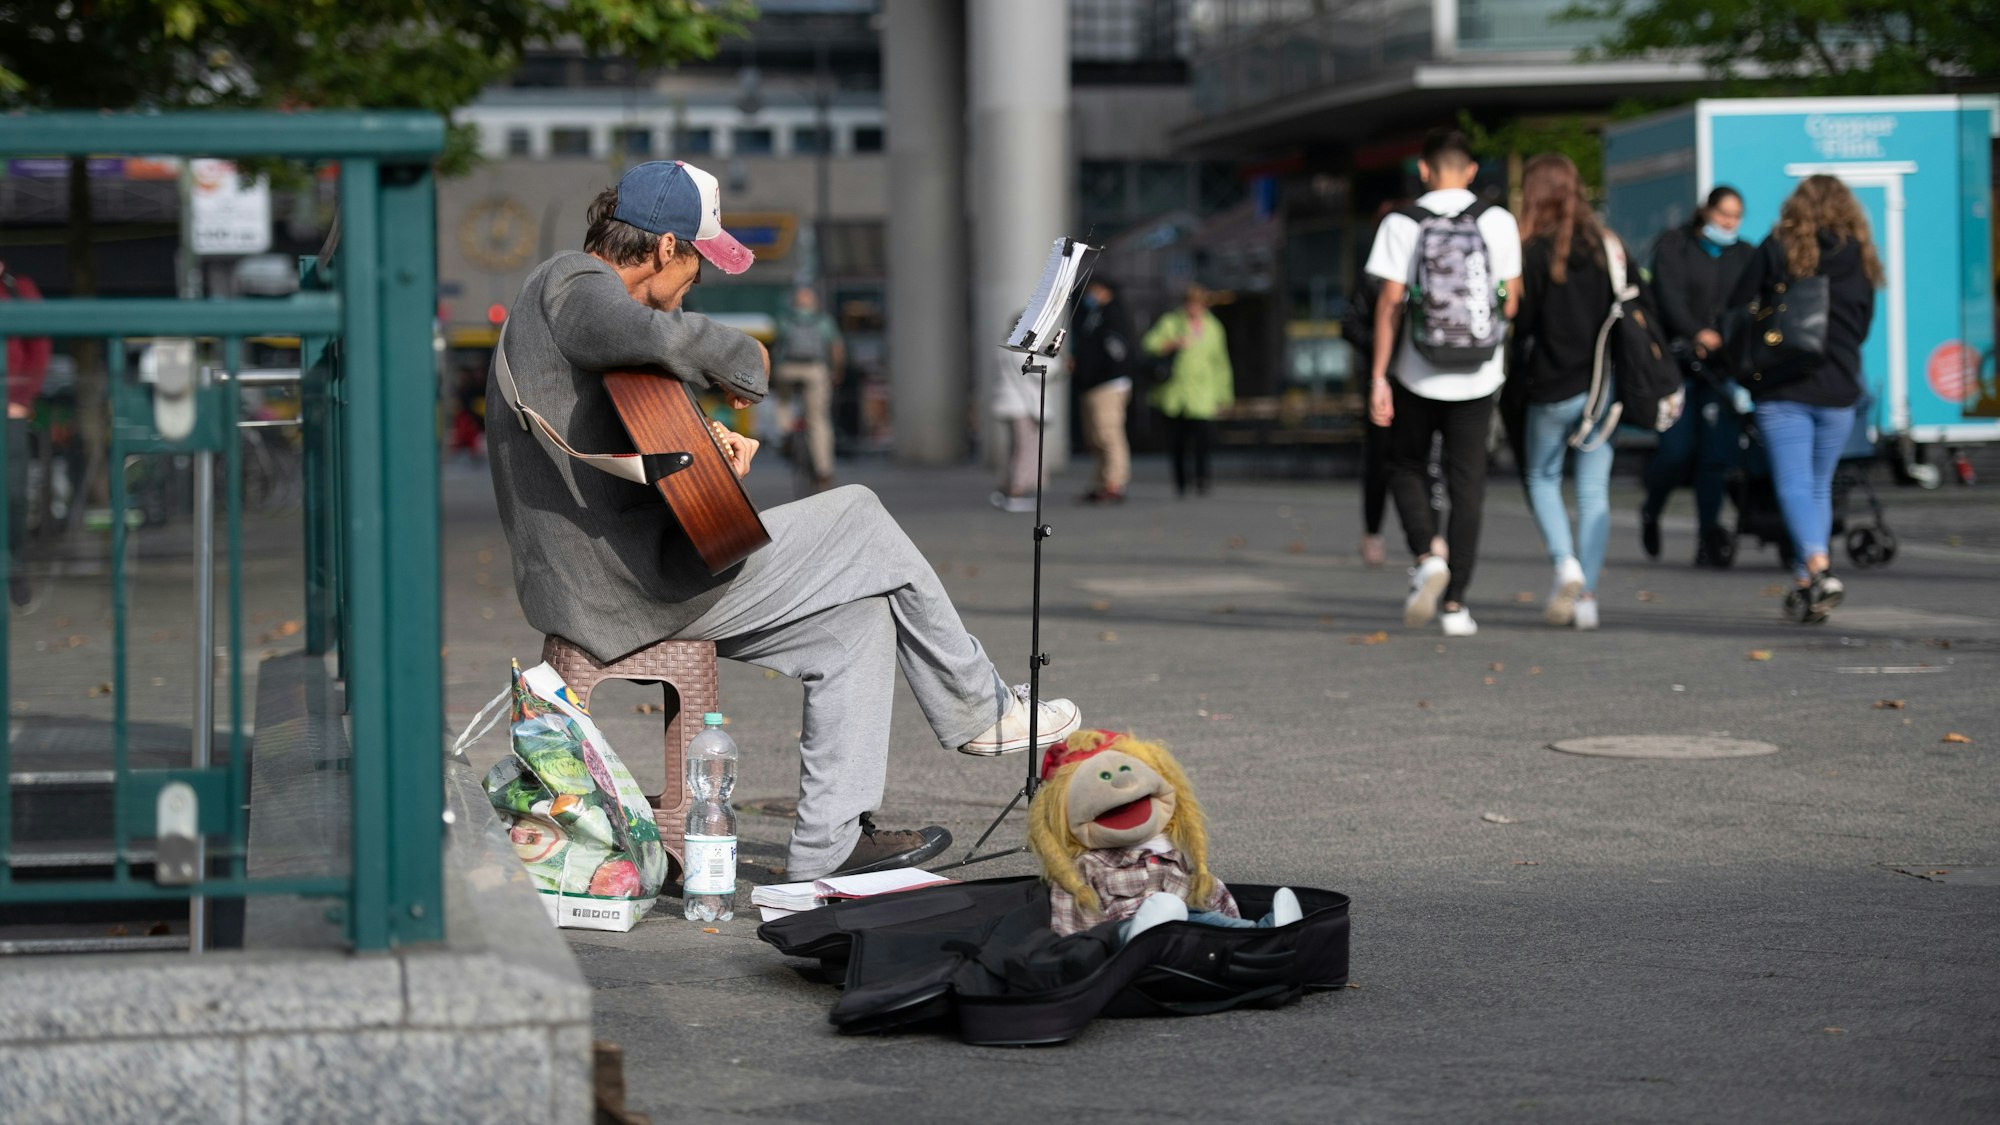 Ein Straßenmusiker sitzt mit Gitarre in einer Fußgängerzone.